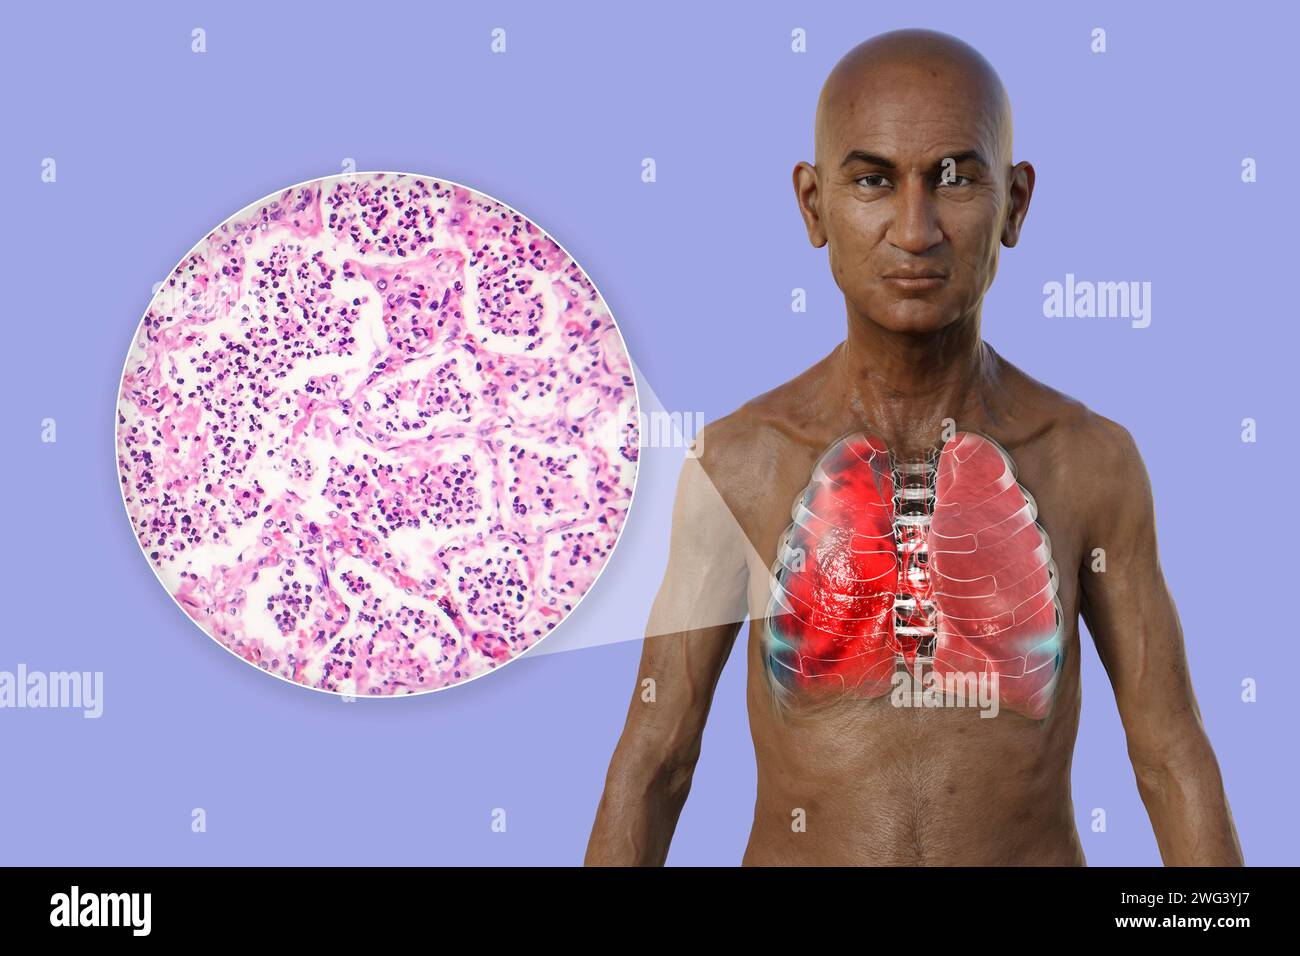 Homme avec des poumons affectés par une pneumonie, illustration Banque D'Images